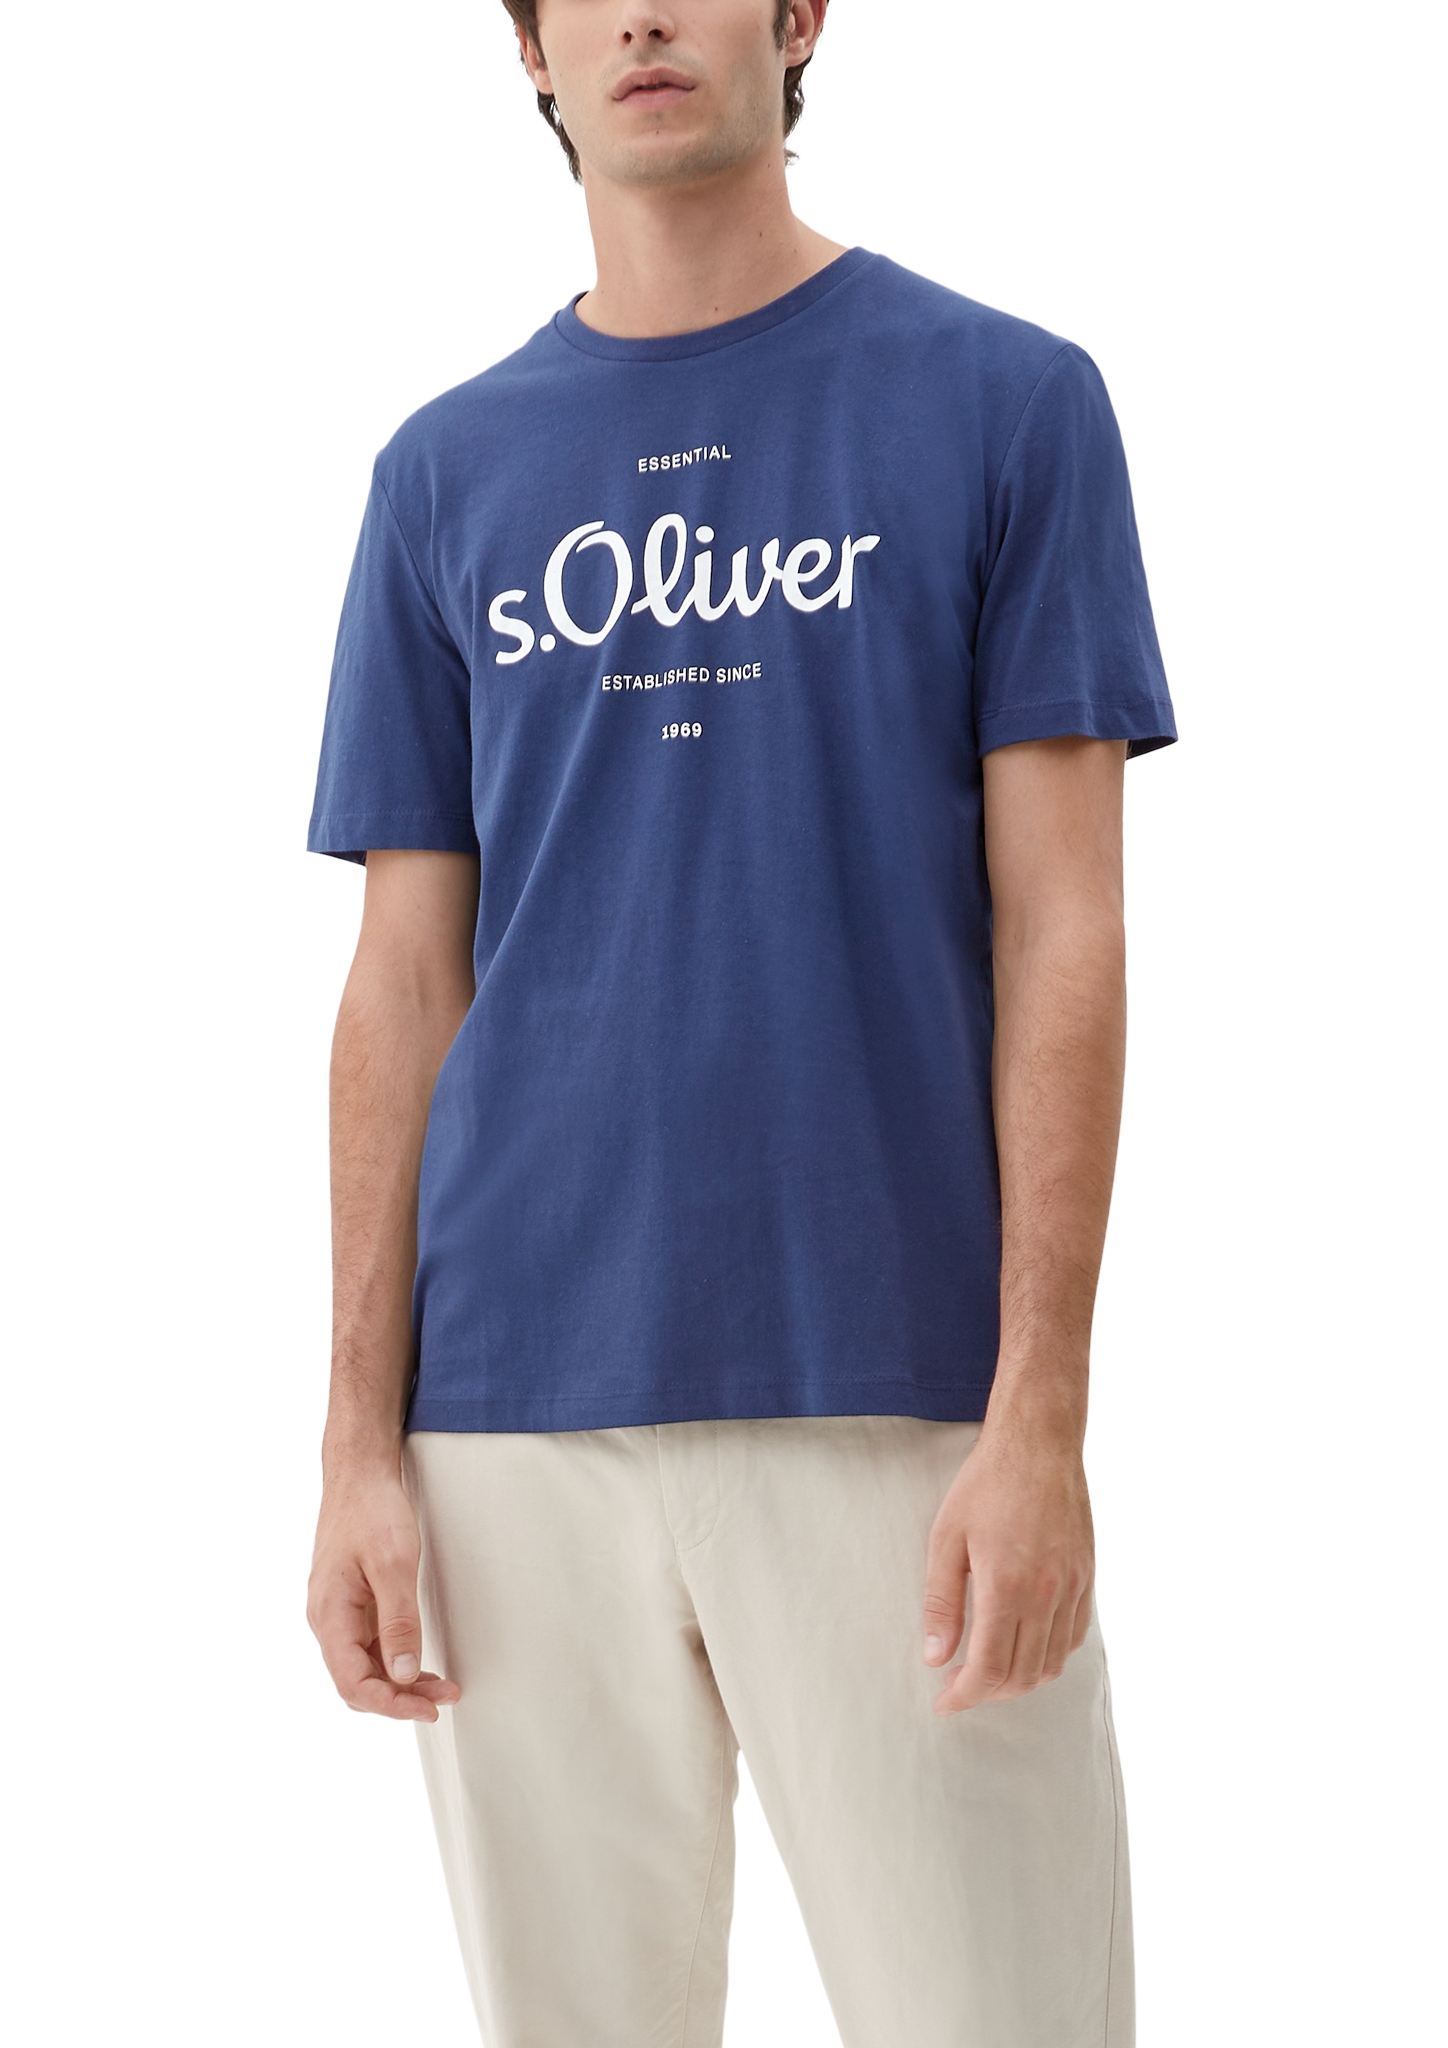 Horsthemke T-Shirt S.Oliver -